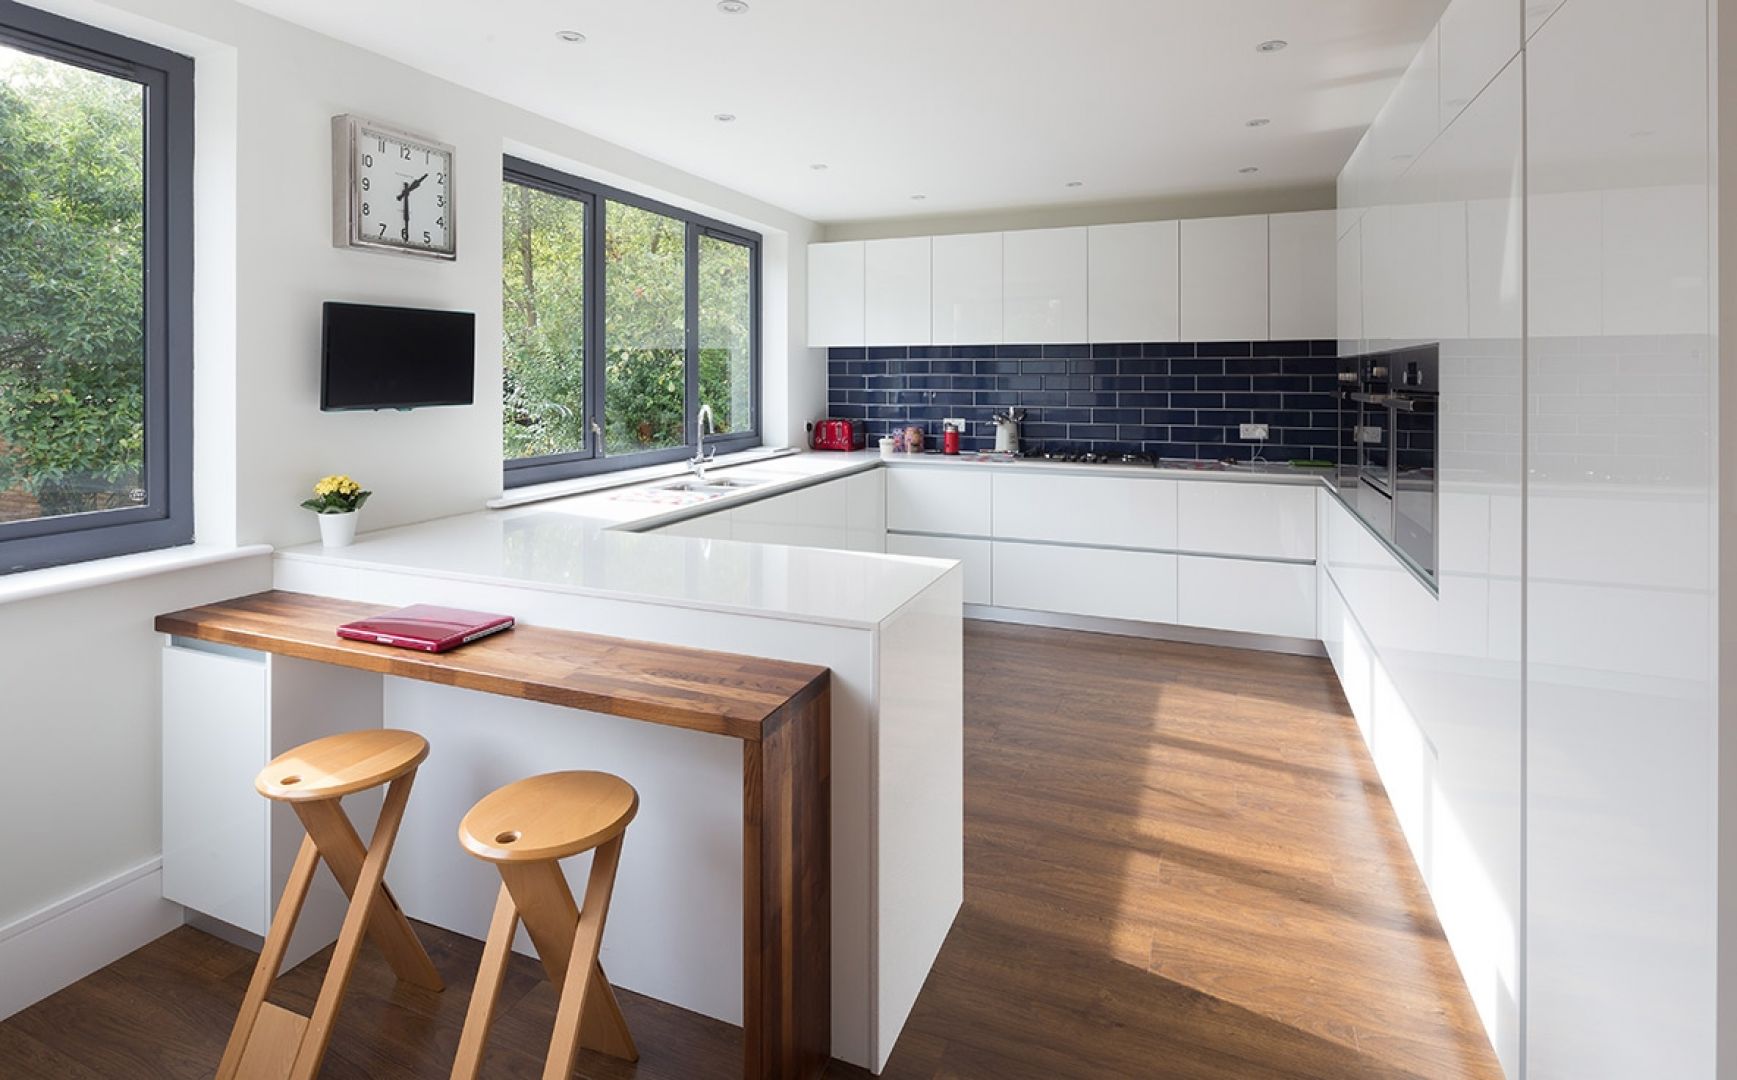 W kuchni dominuje nowoczesny minimalizm. Białe wnętrze ocieplono drewnem. Fot. Nick Leith Smith